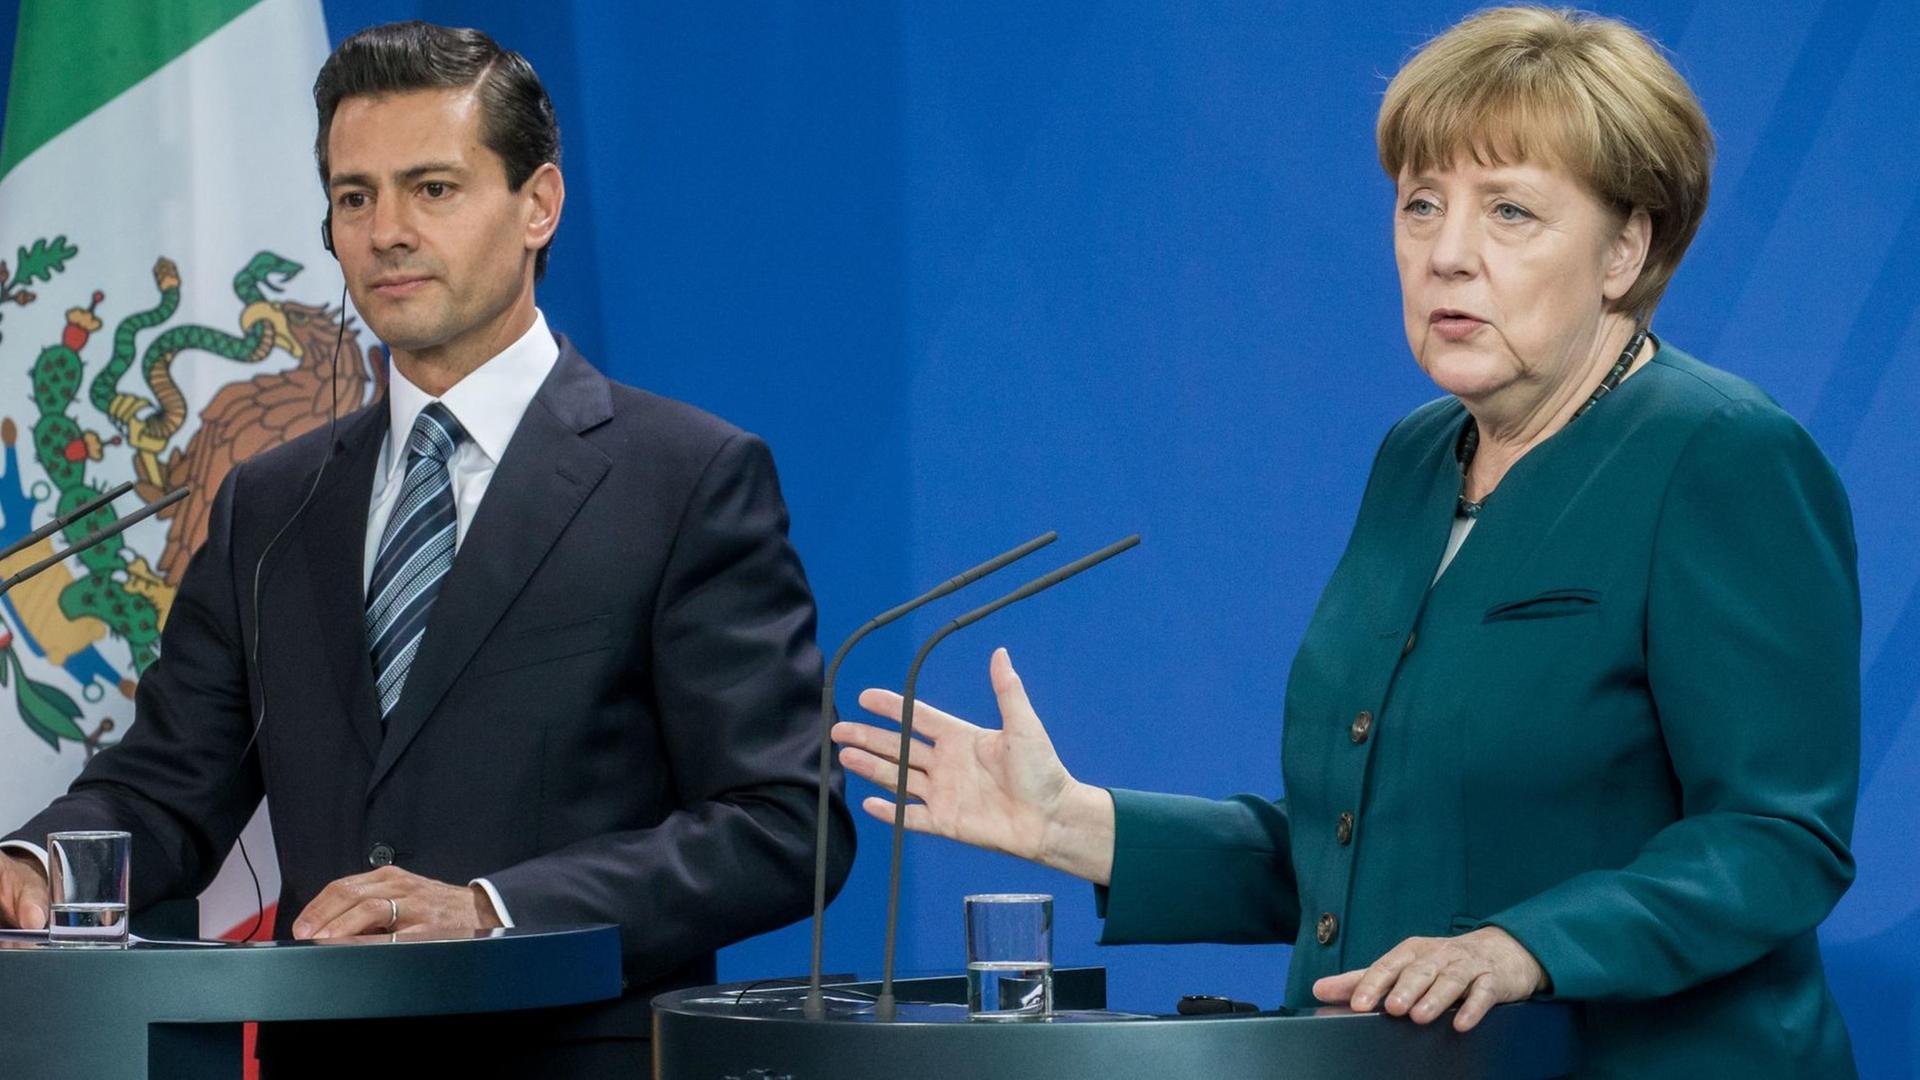 Bundeskanzlerin Angela Merkel (CDU) spricht neben dem mexikanischen Präsidenten Enrique Pena Nieto am 12.04.2016 im Bundeskanzleramt in Berlin während der Pressekonferenz.